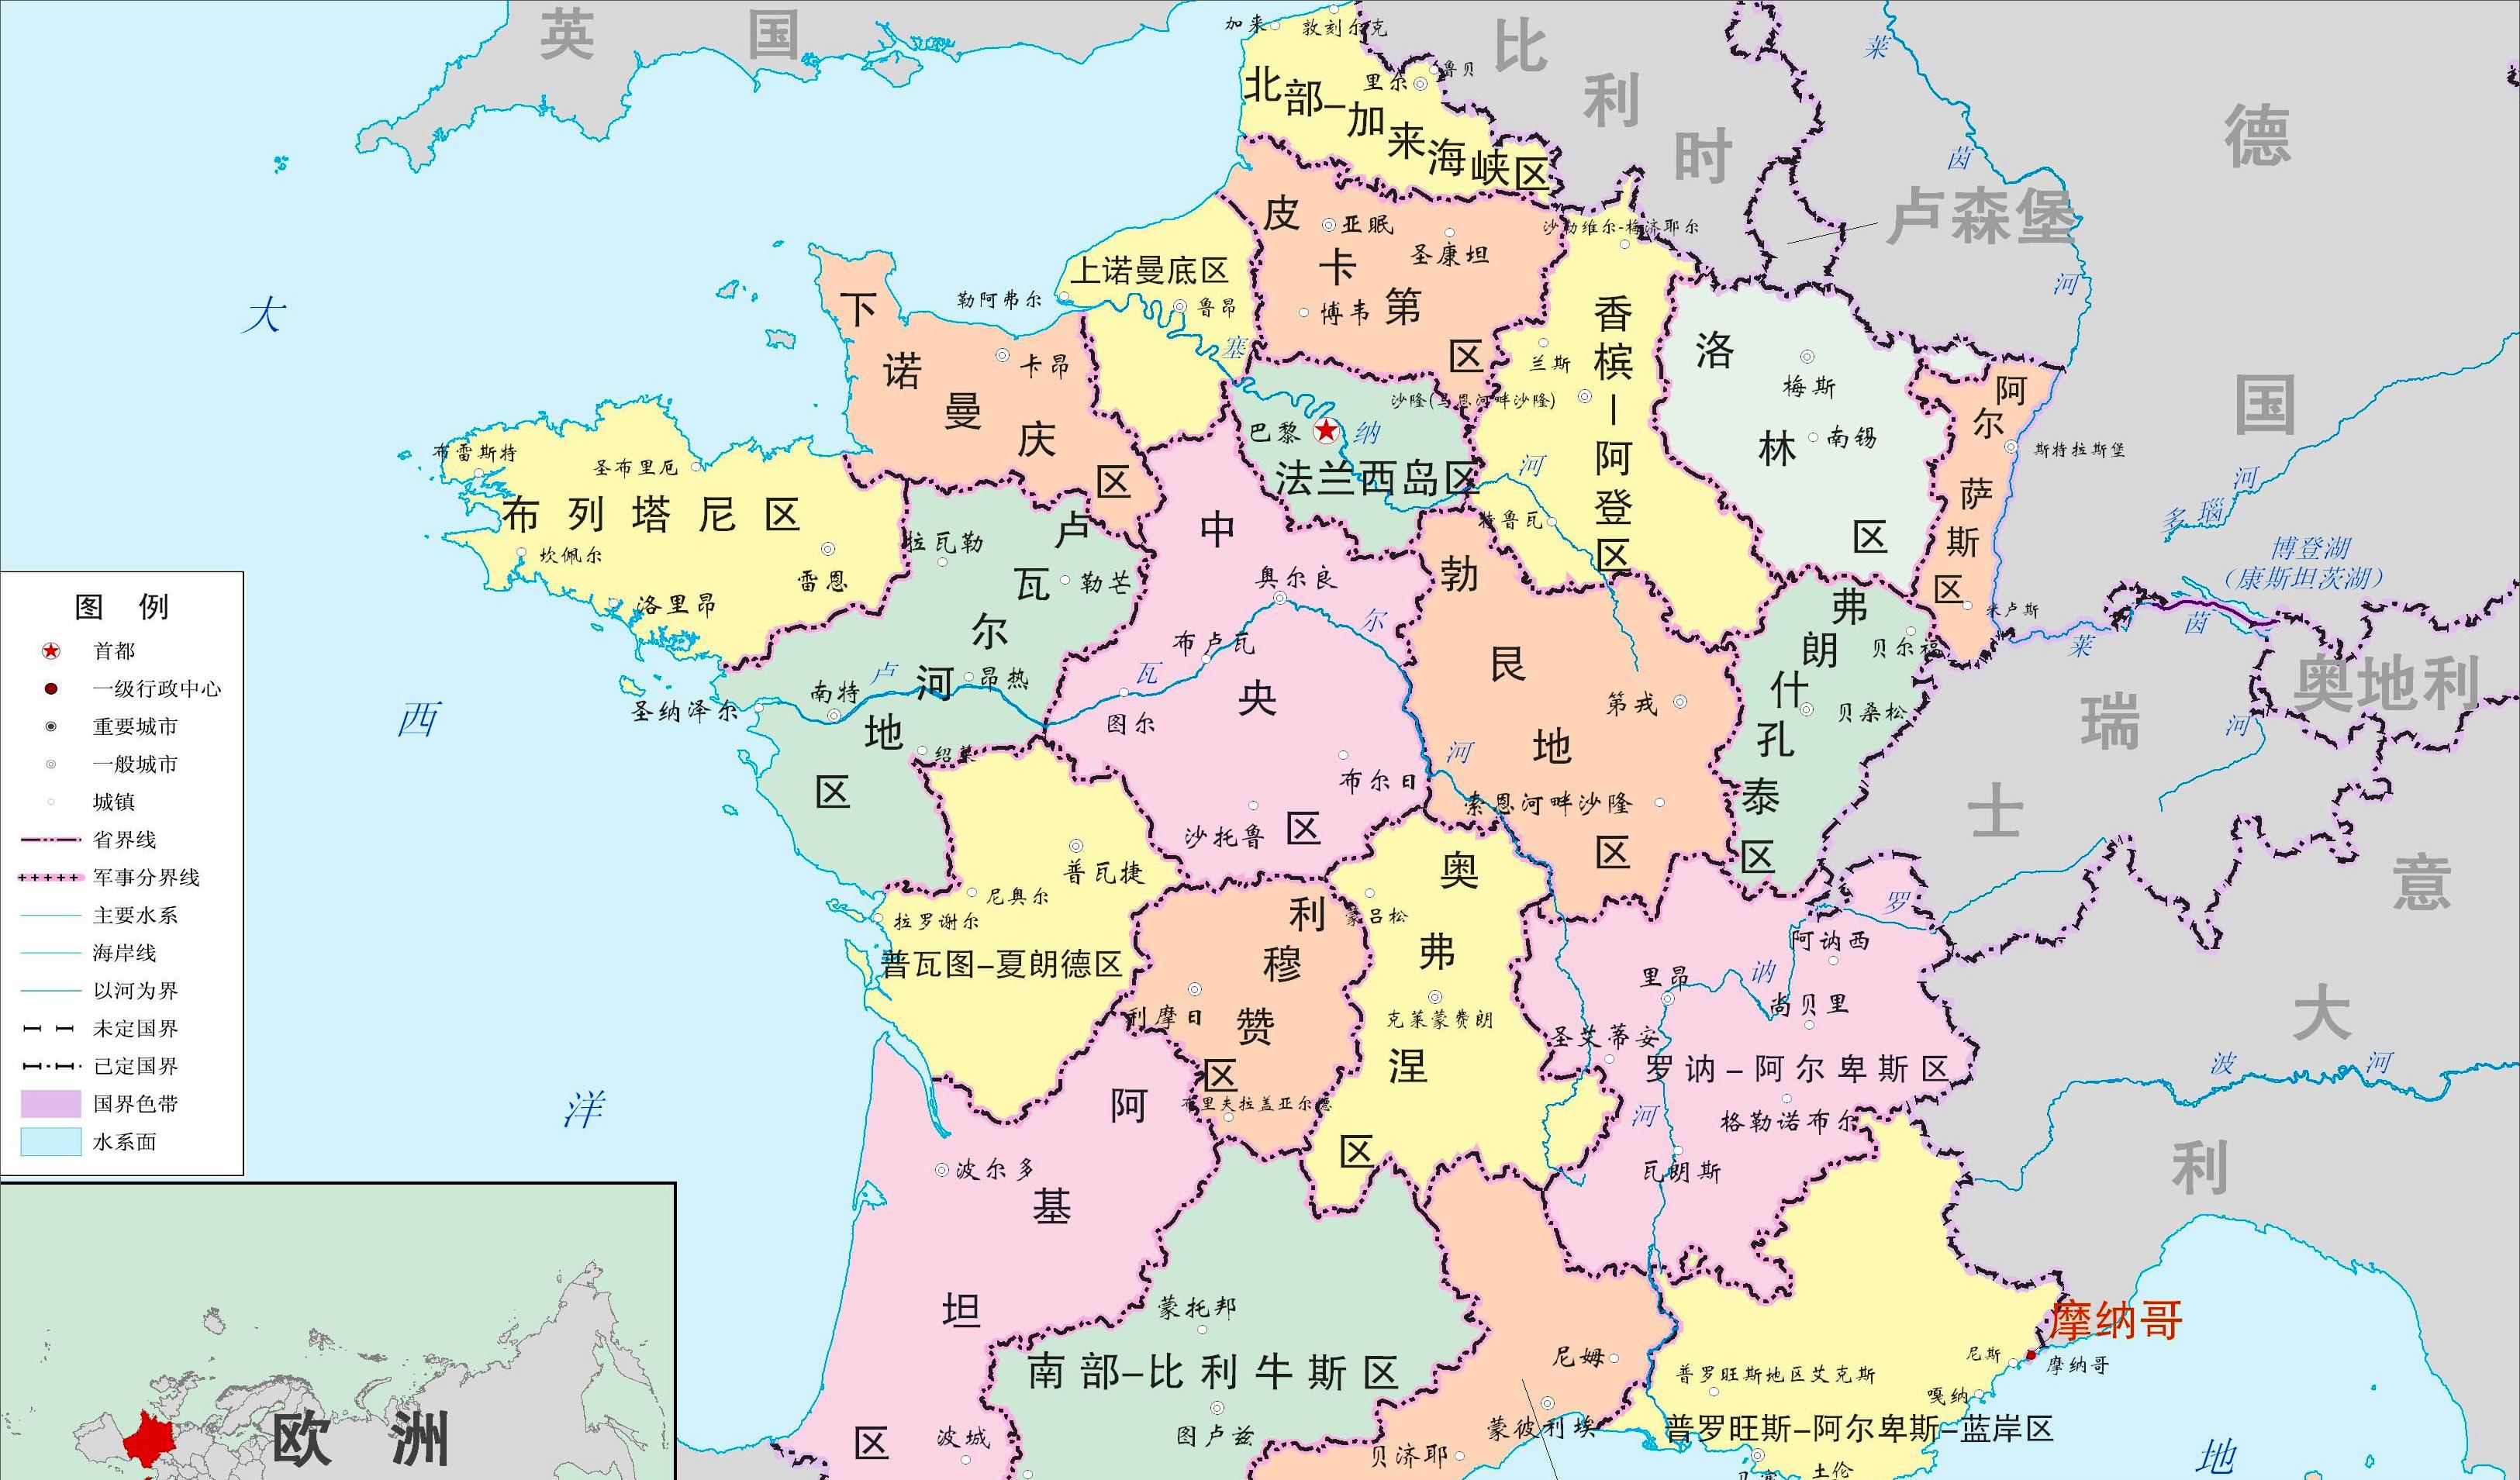 原创鲜为人知的法国行政区划拿破仑的故乡科西嘉与法国本土并不相同